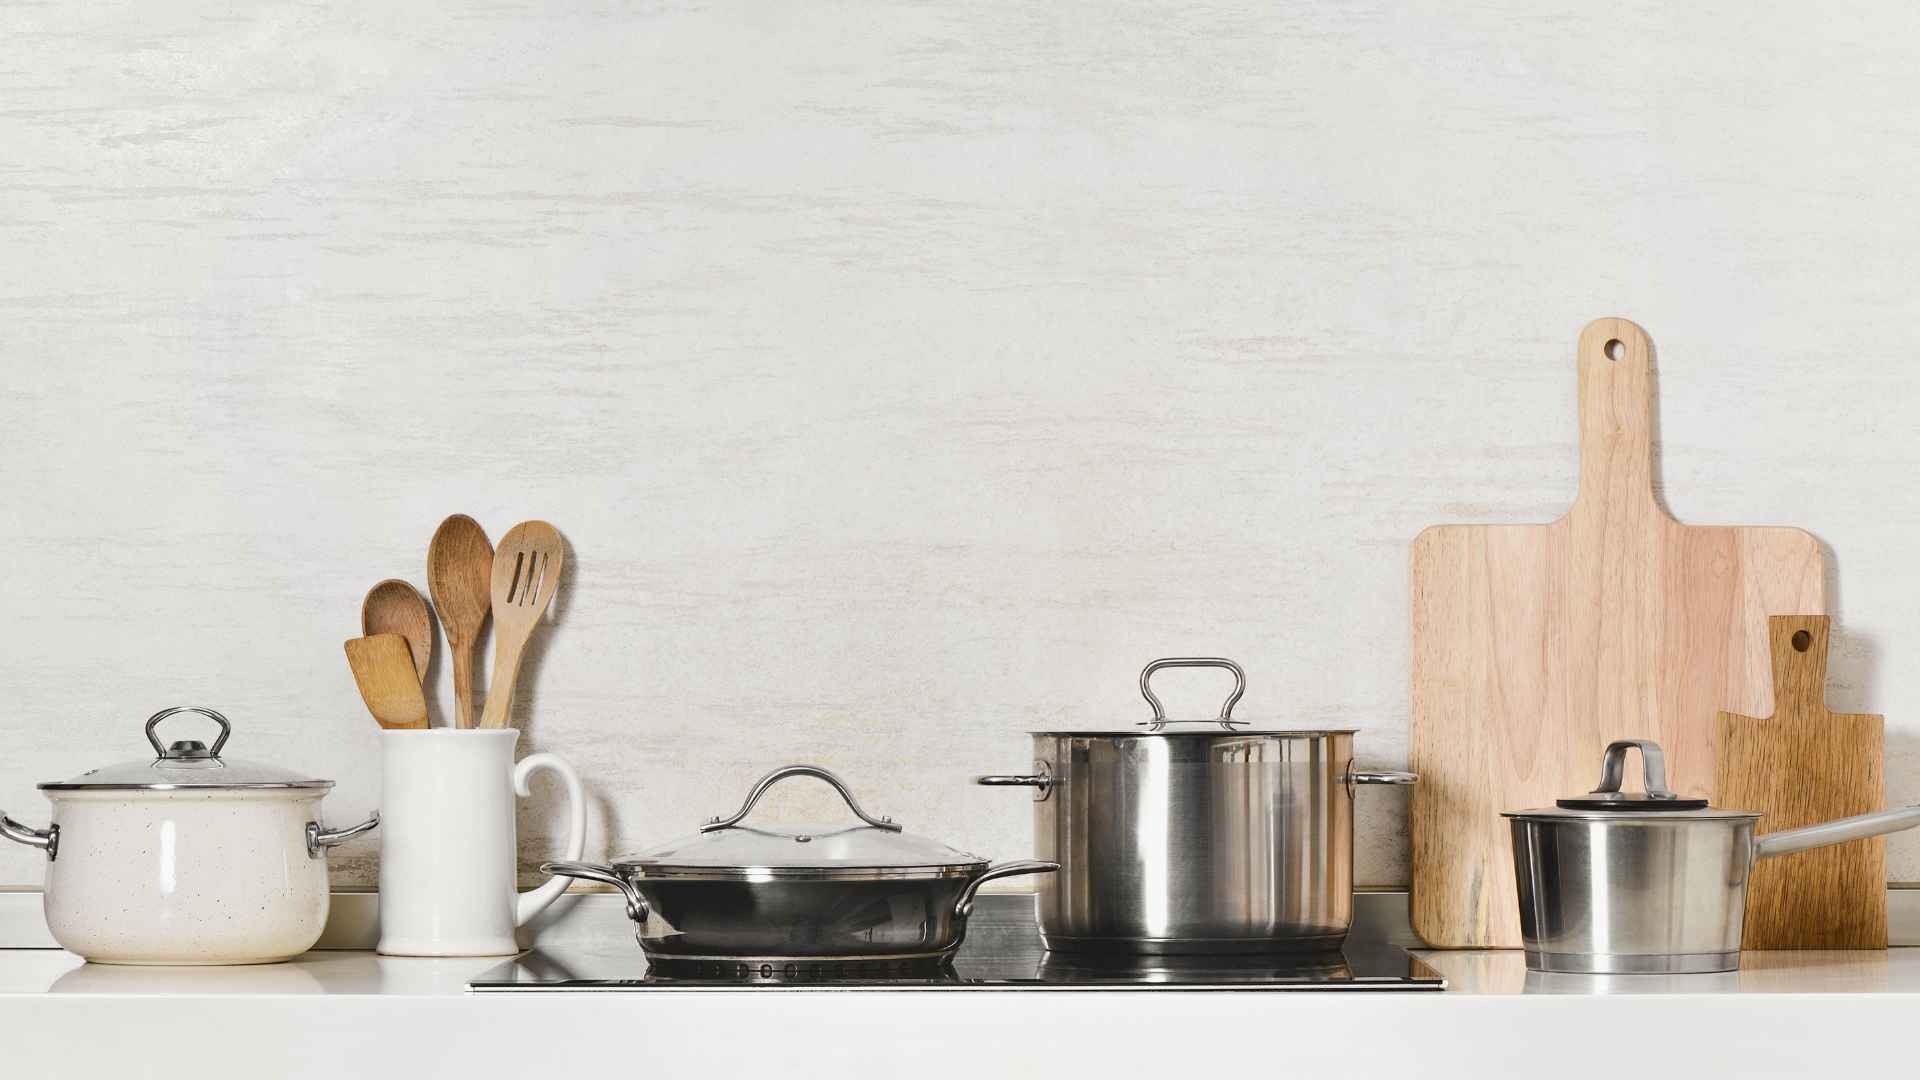 Essentials Kitchen Pack - The complete kitchen starter set – Student  Essentials